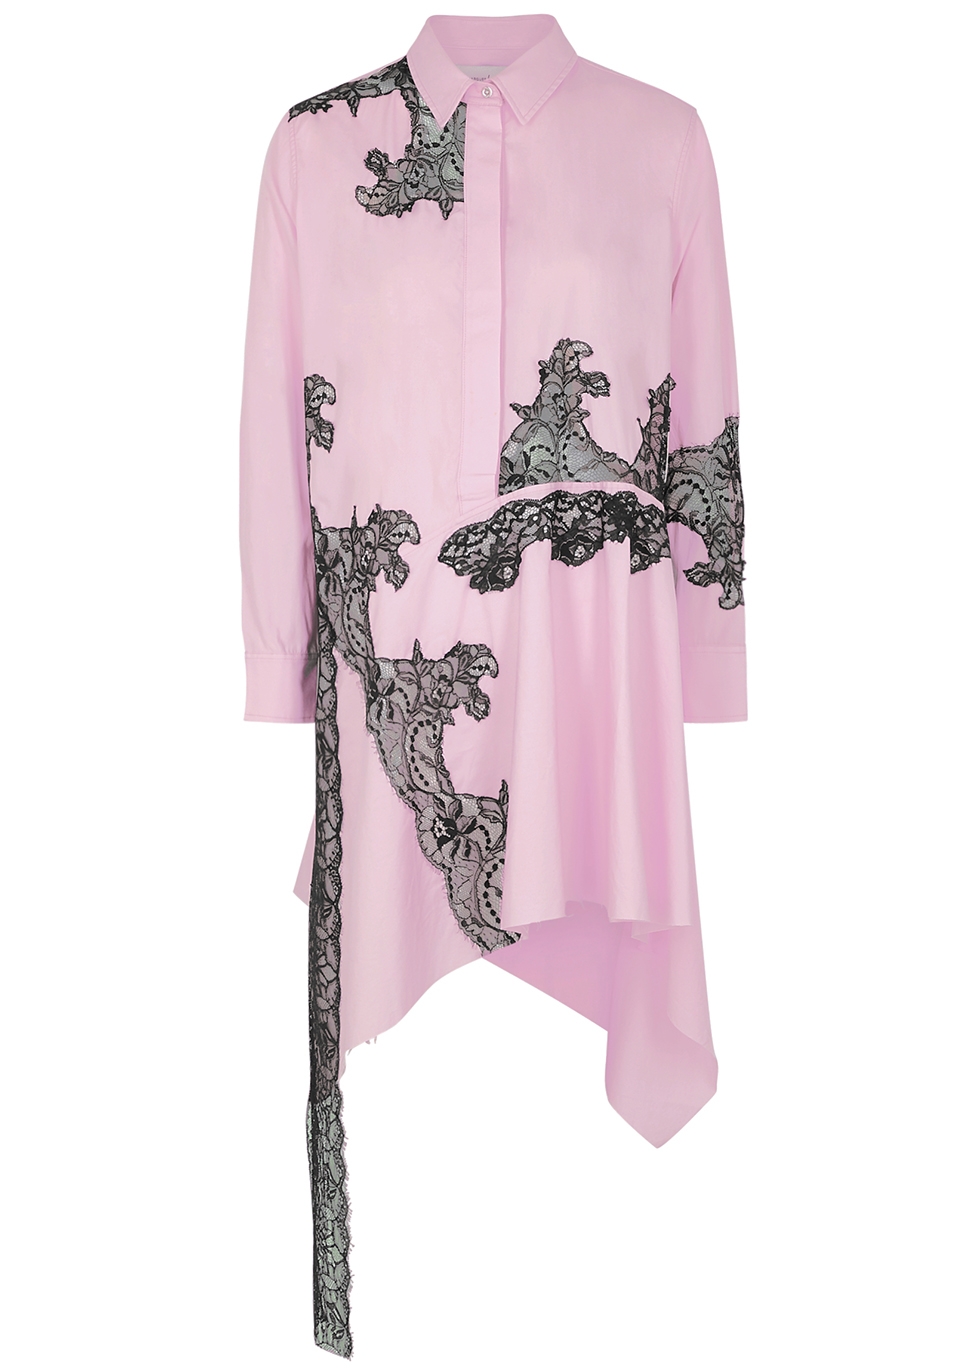 Pink lace-appliquéd cotton shirt dress